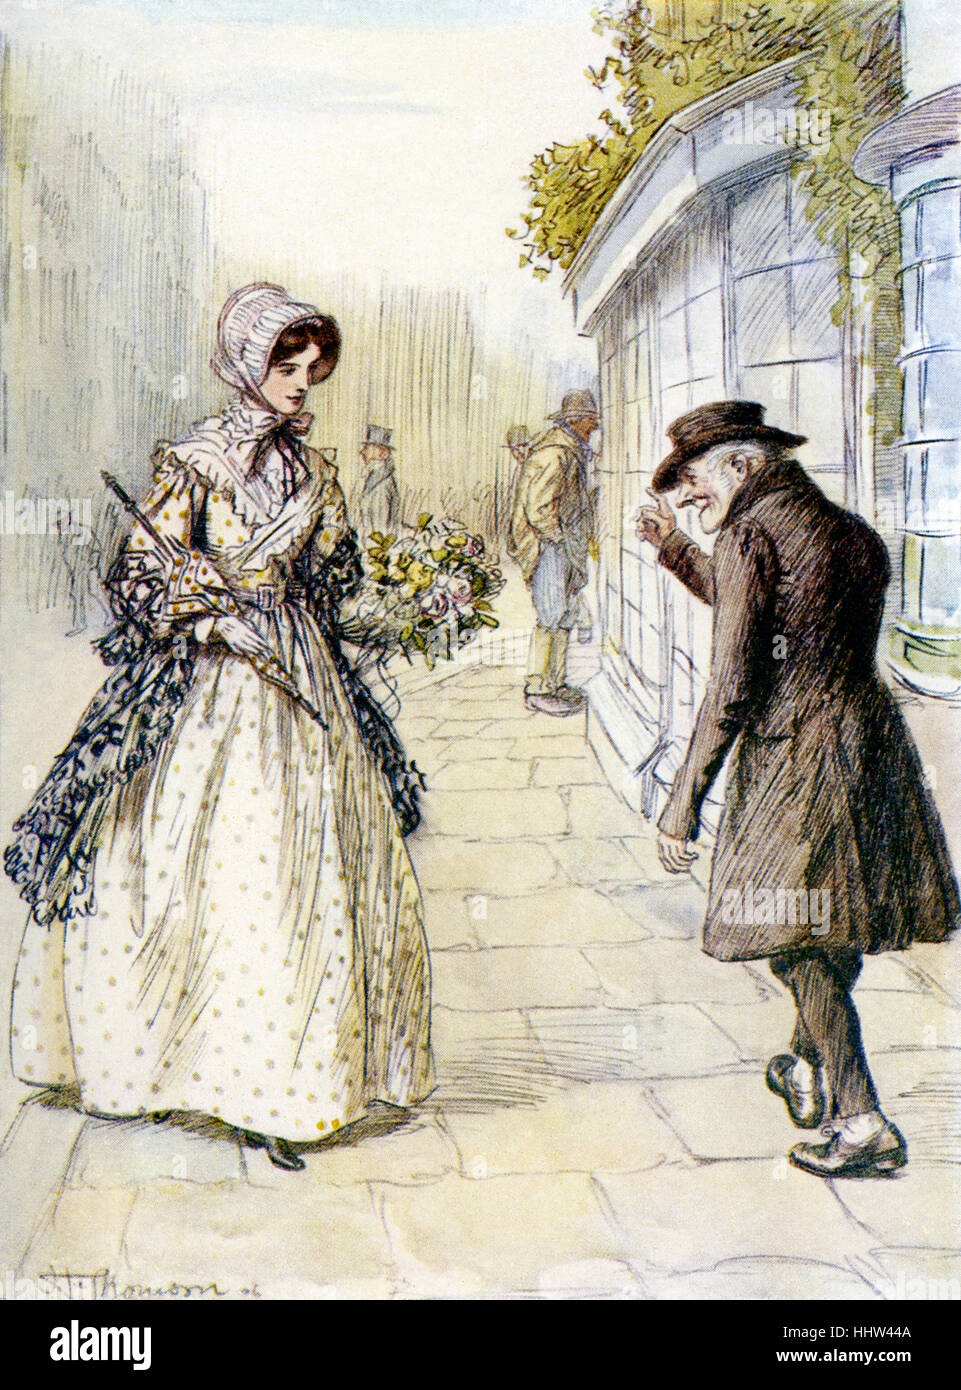 Szenen aus dem kirchlichen Leben von George Eliot.  Illustrationen von Hugh Thomson. Bildunterschrift lautet: "sie nickt, Jonathan Lamb, das alte Stockfoto